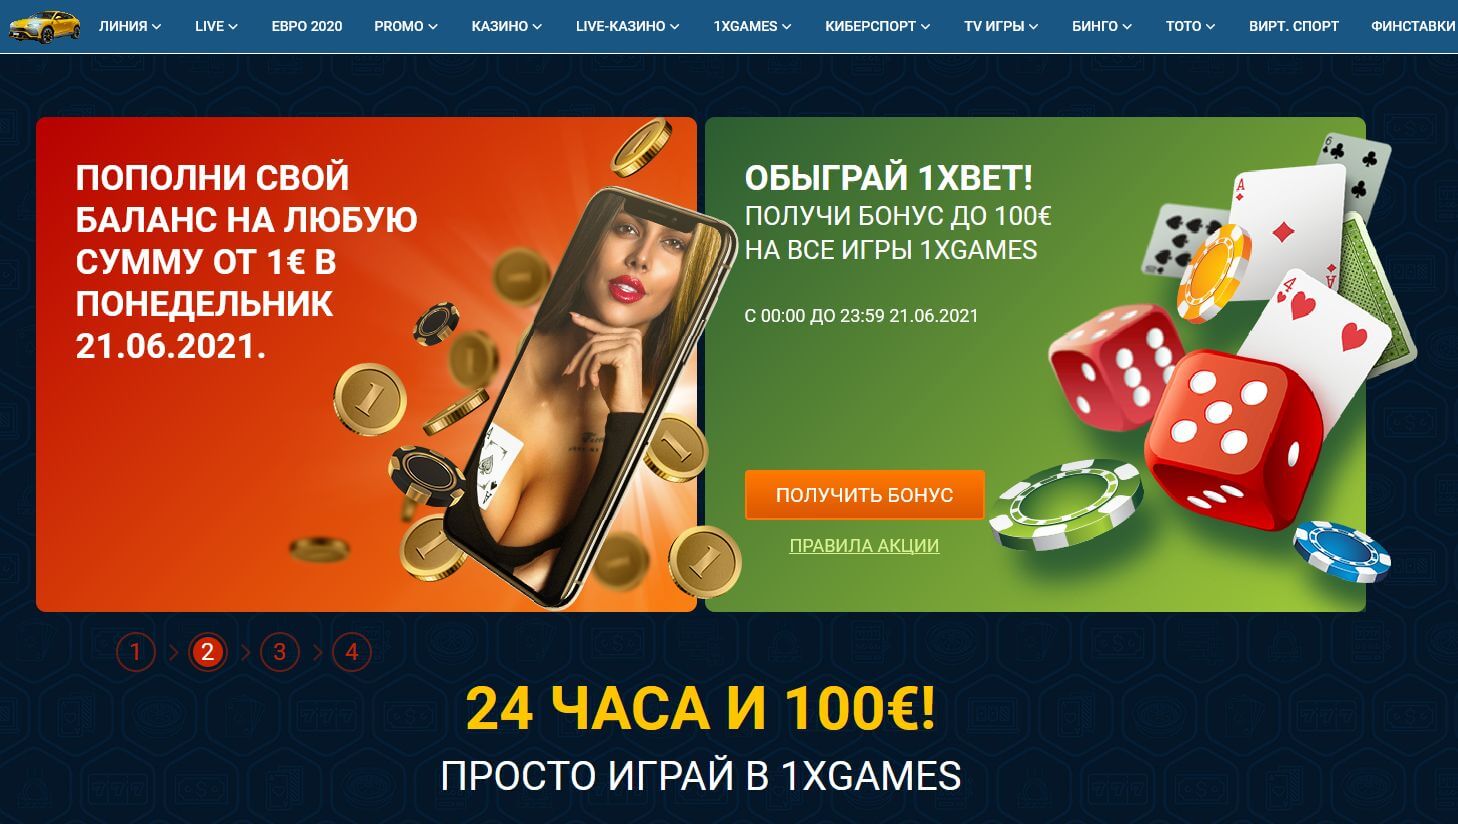 1xbet условия акции казино вулкан игровые автоматы онлайн